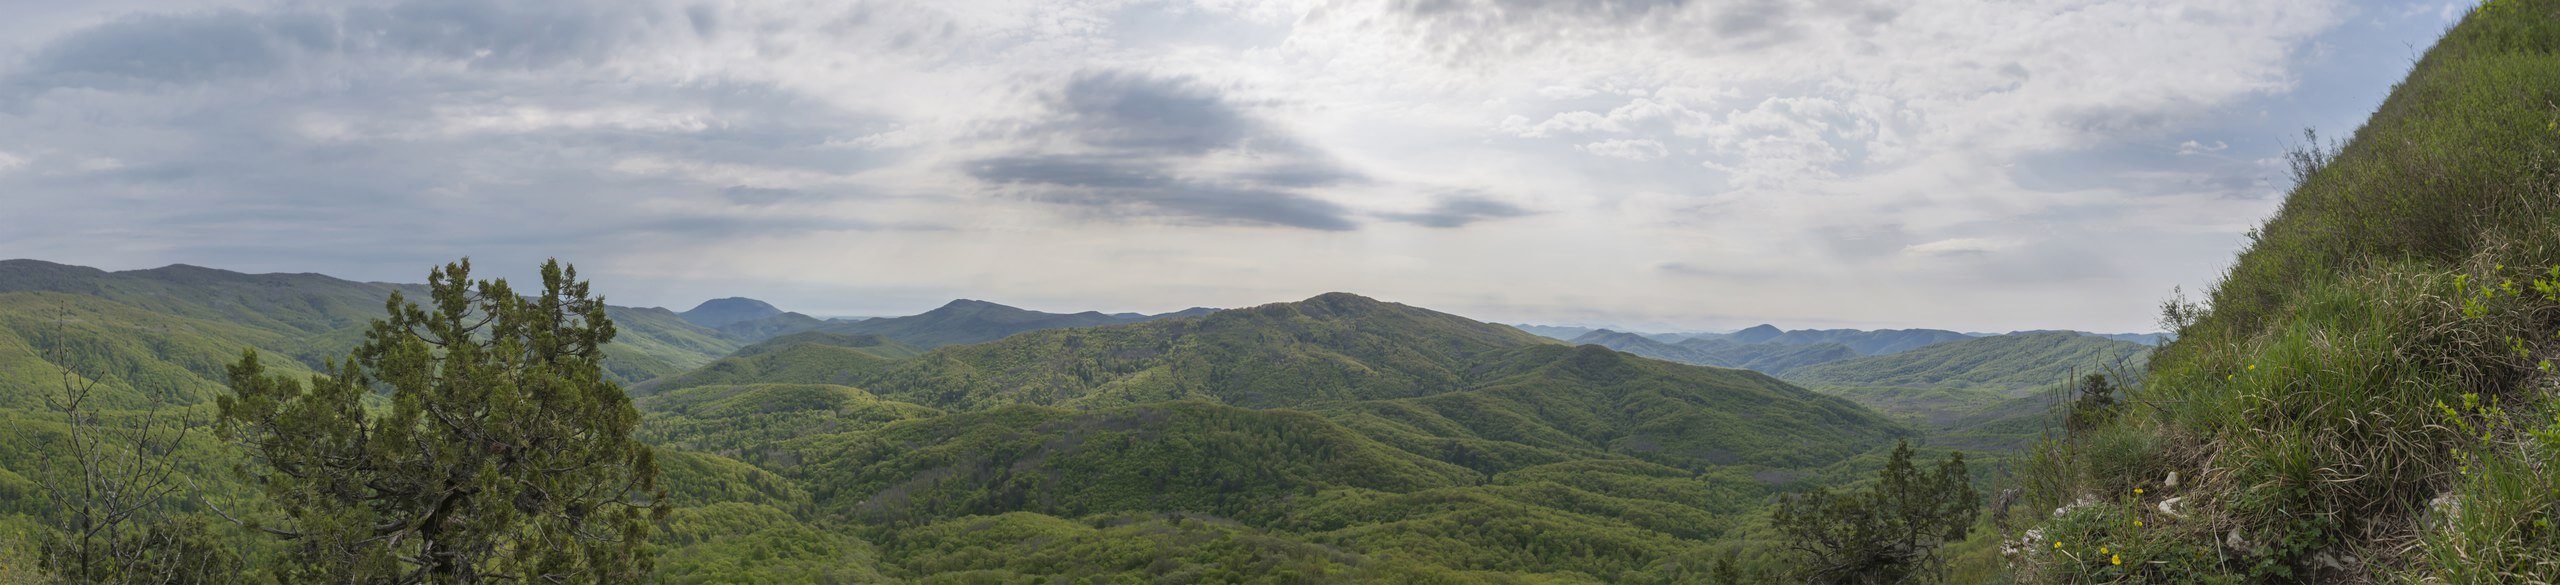 Панорама рядом с восточной вершиной горы Папай